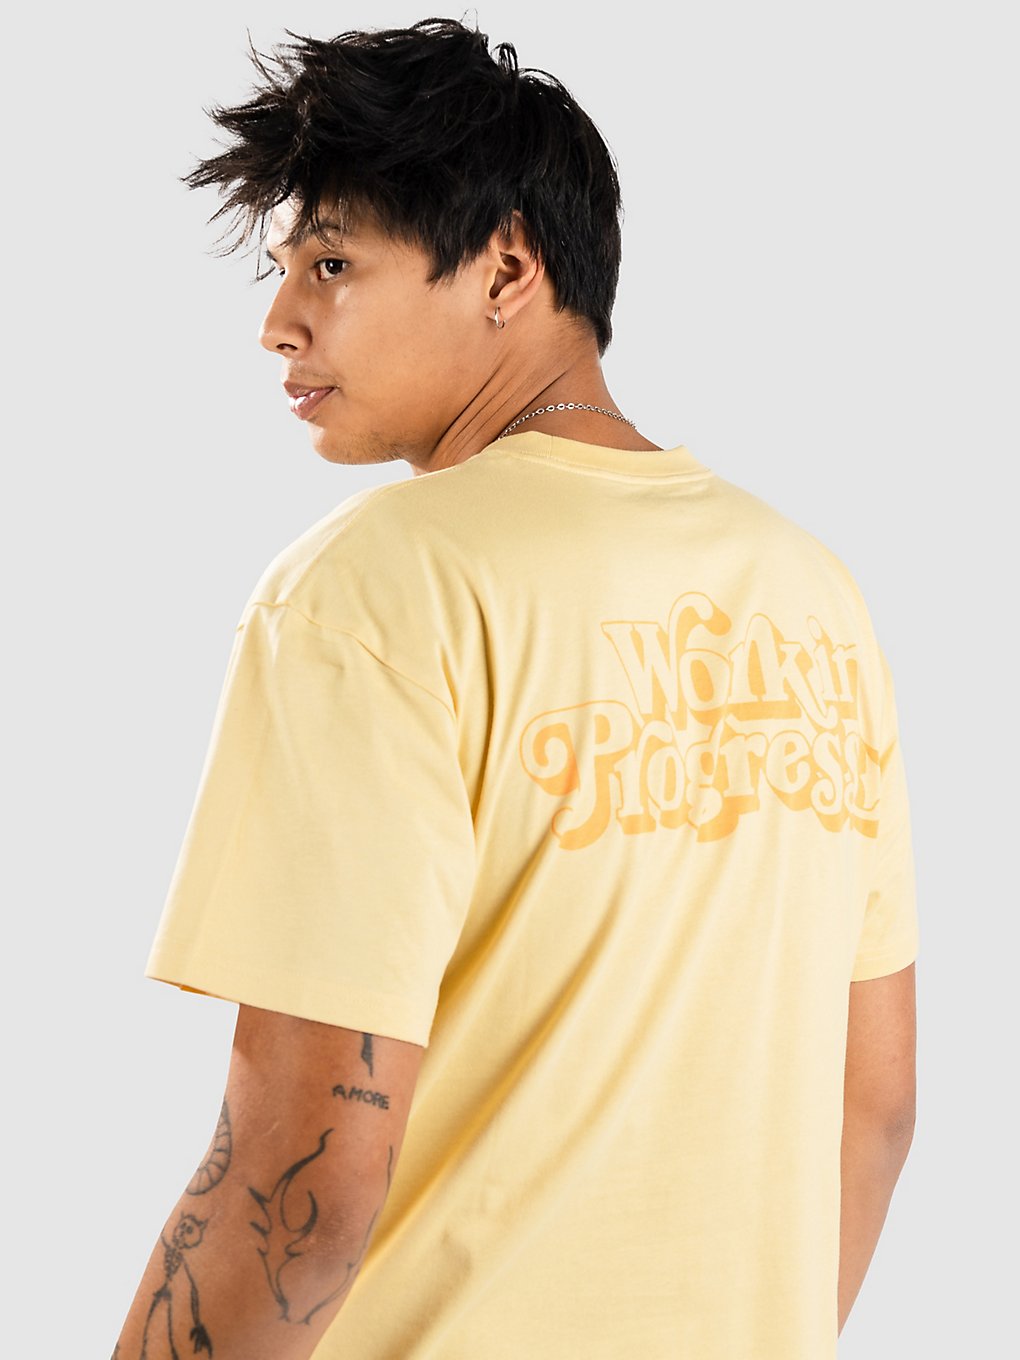 Carhartt WIP Fez T-Shirt citron kaufen